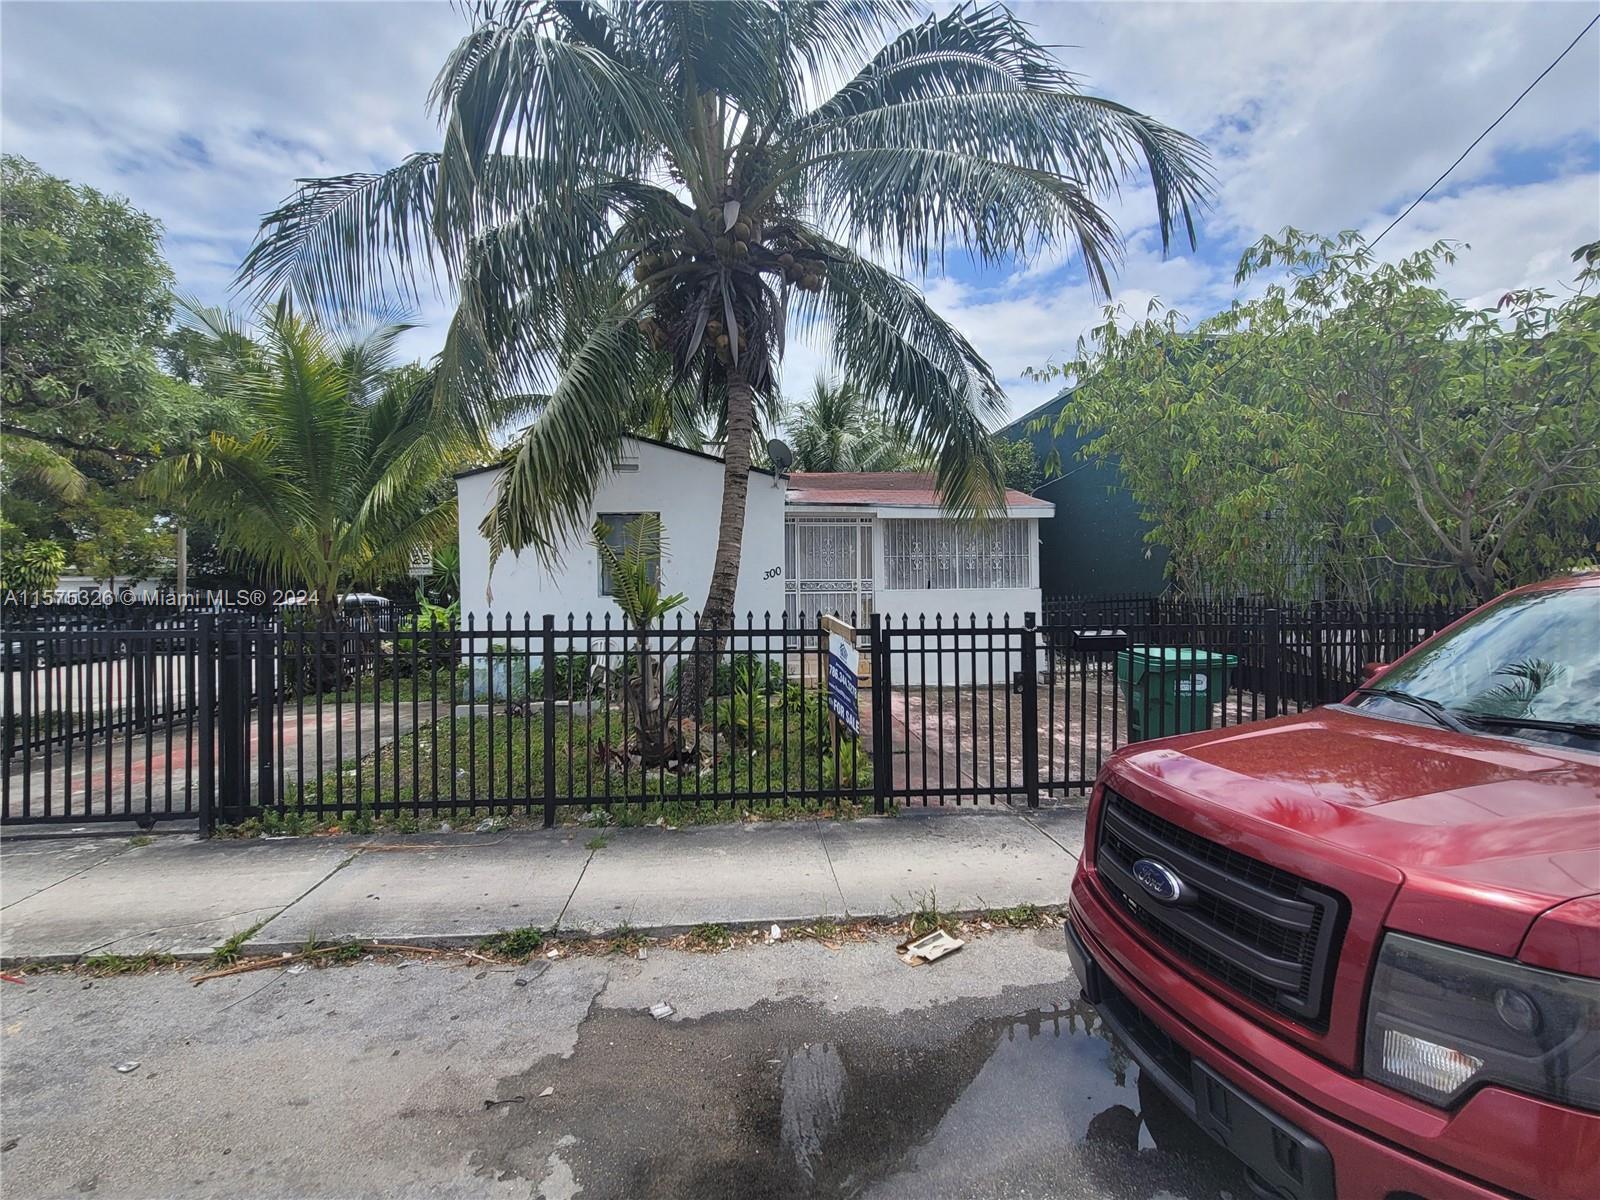 Rental Property at 7030 Nw 3rd Ave, Miami, Broward County, Florida -  - $579,900 MO.